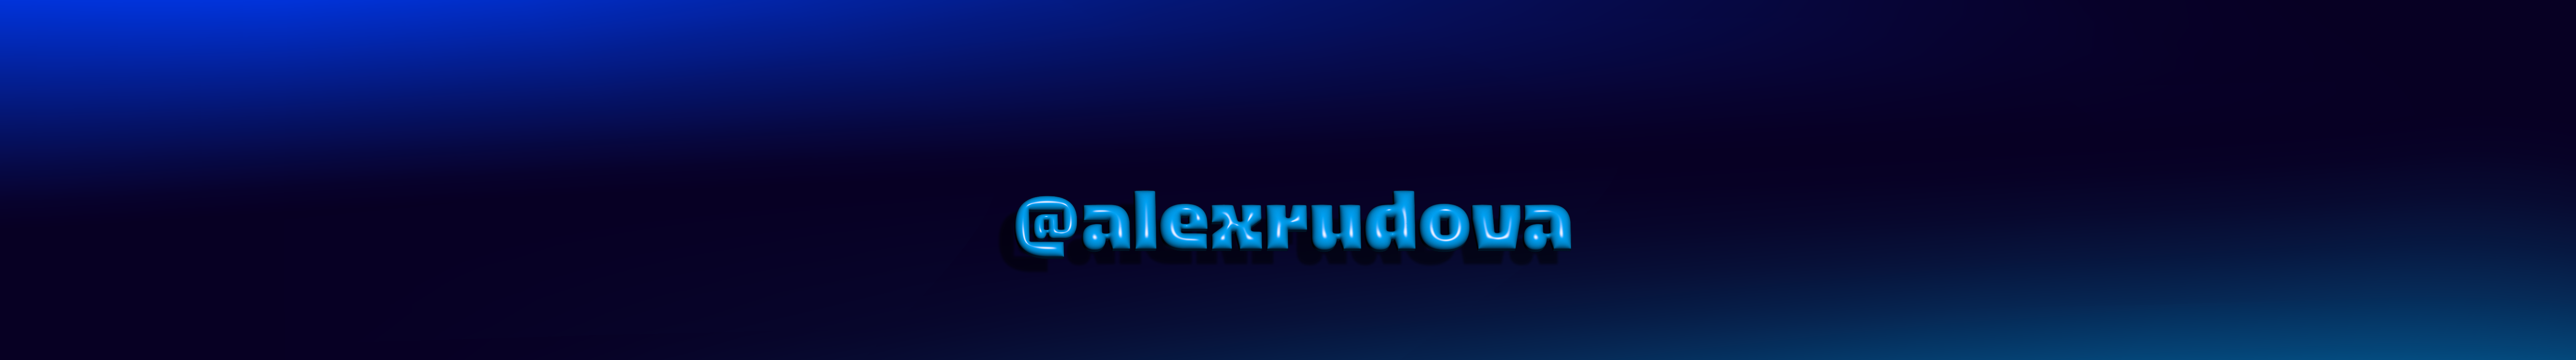 Alex Rudova's profile banner